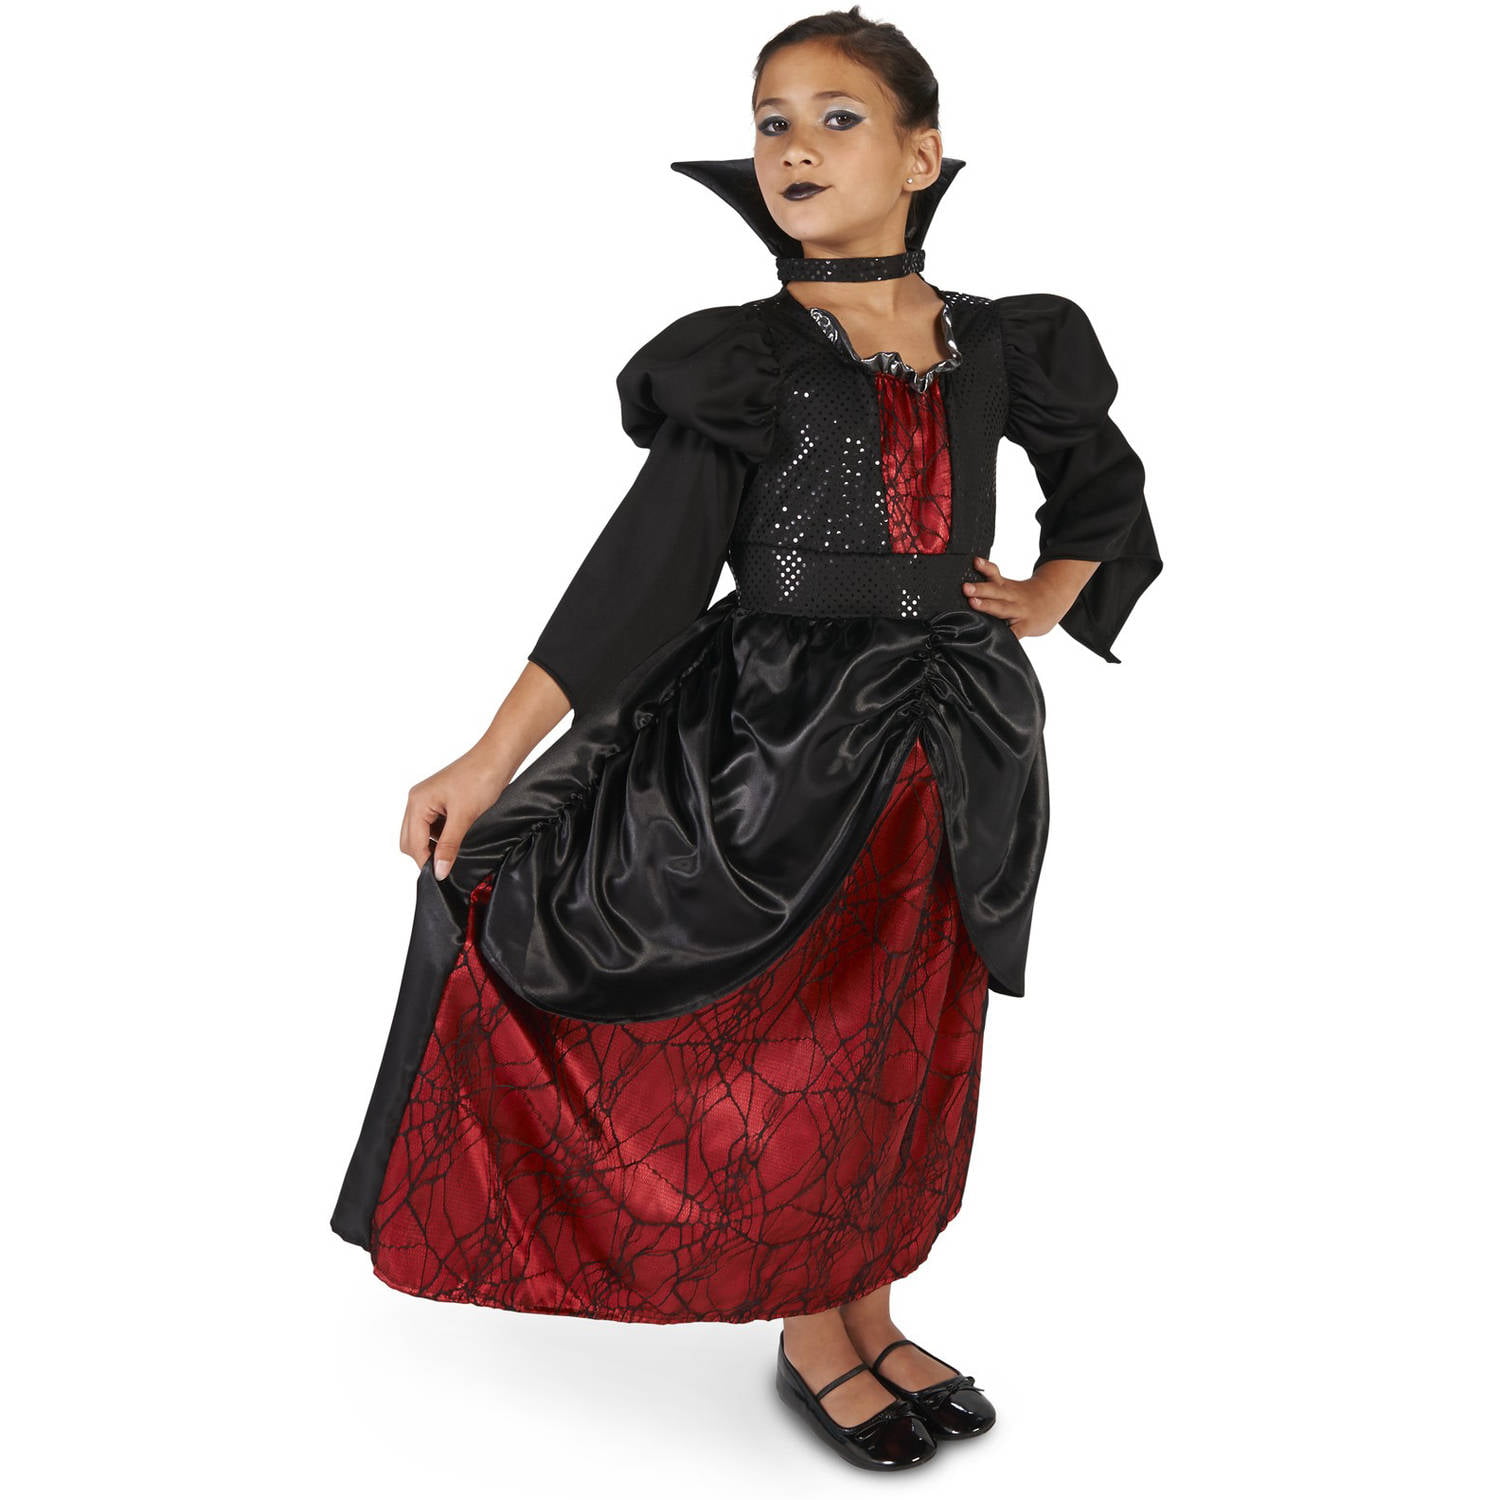 Young Vampire Queen Child Halloween Costume - Walmart.com